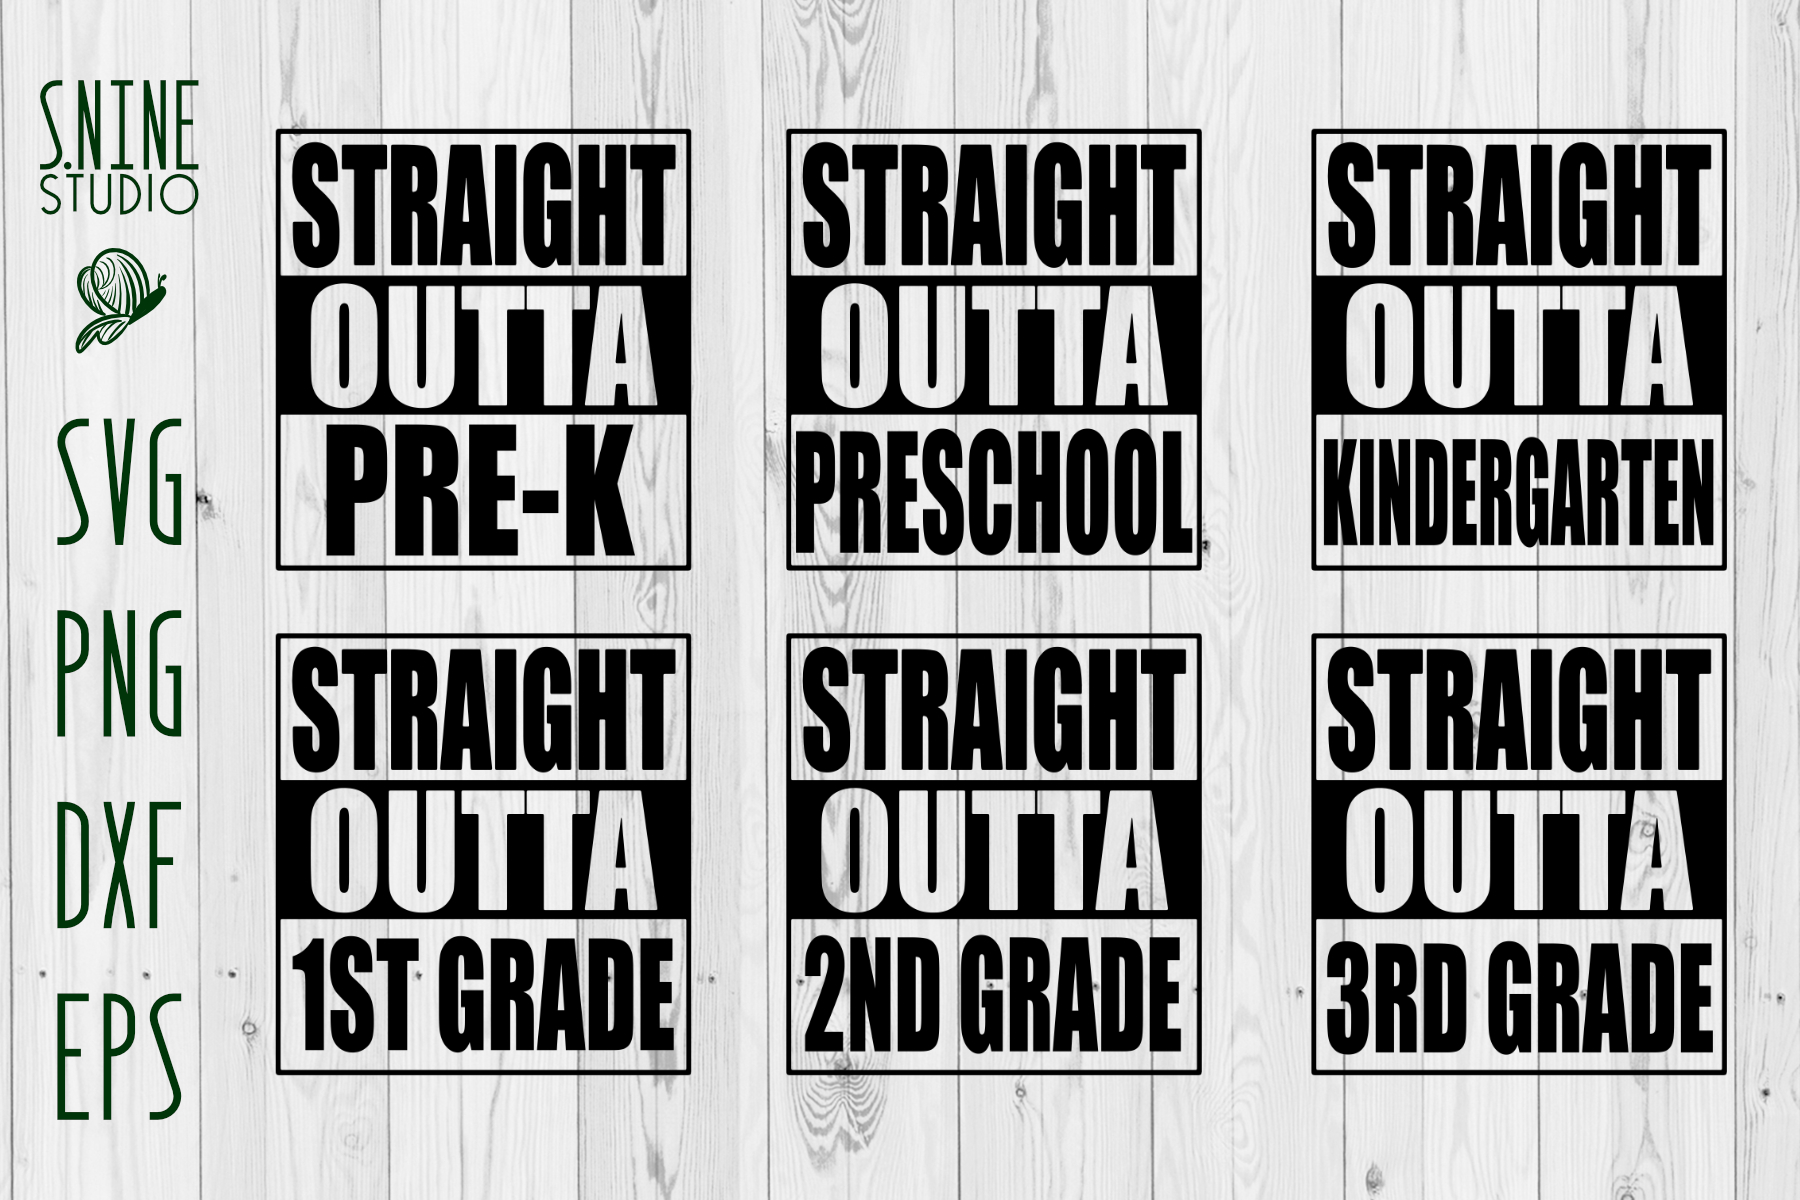 Straight Outta Pre k Pre School Kindergarden Grade 1 2 3 ...